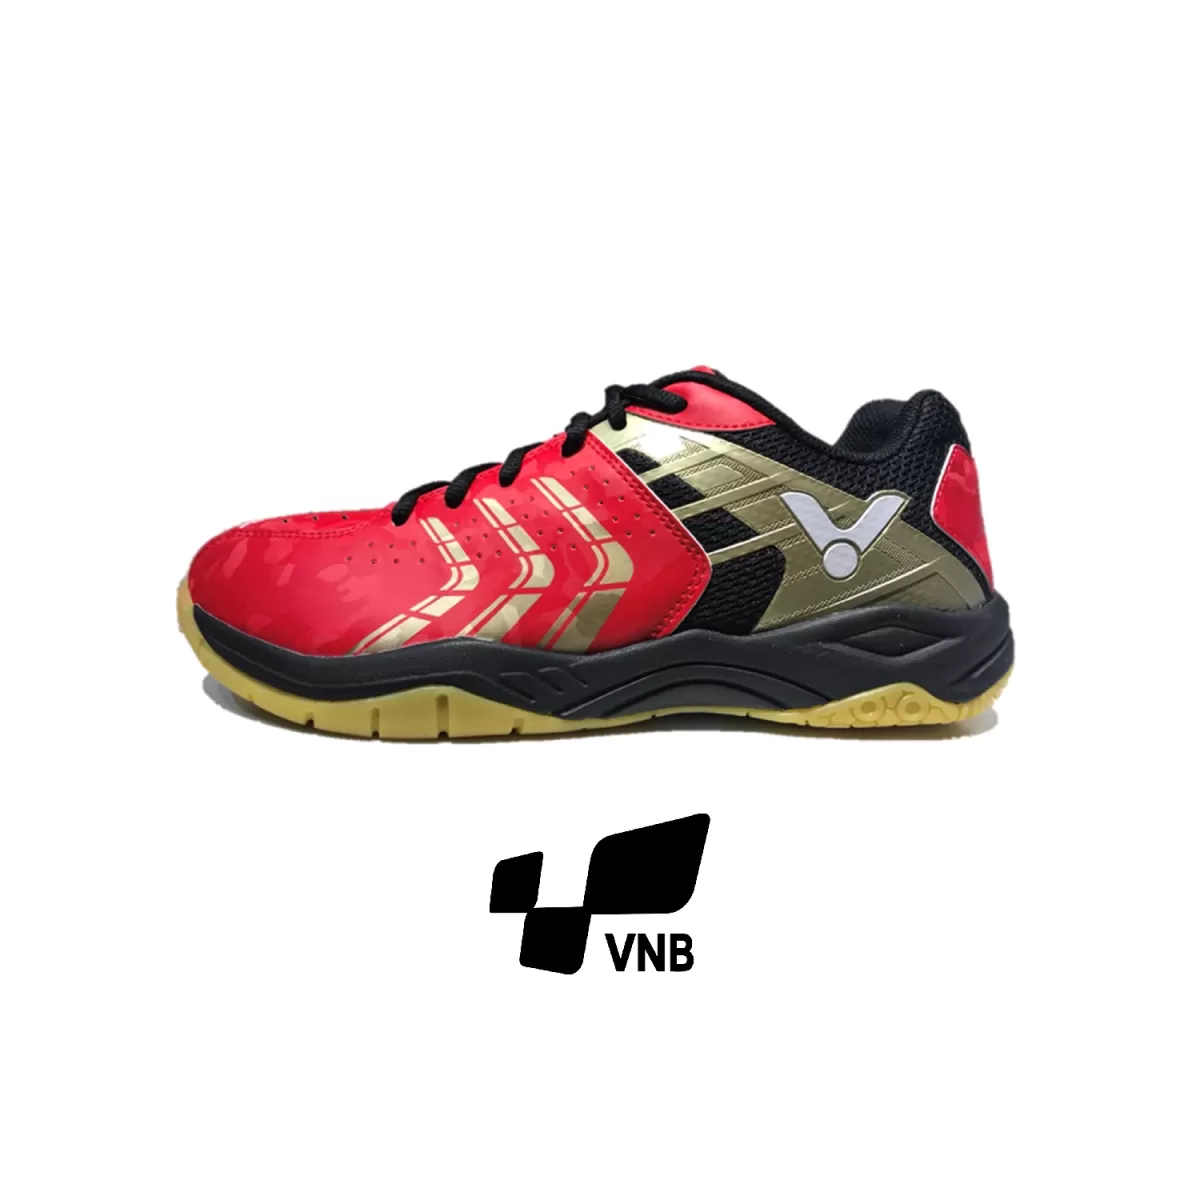 Giày cầu lông Victor 920 DC - Đỏ đen